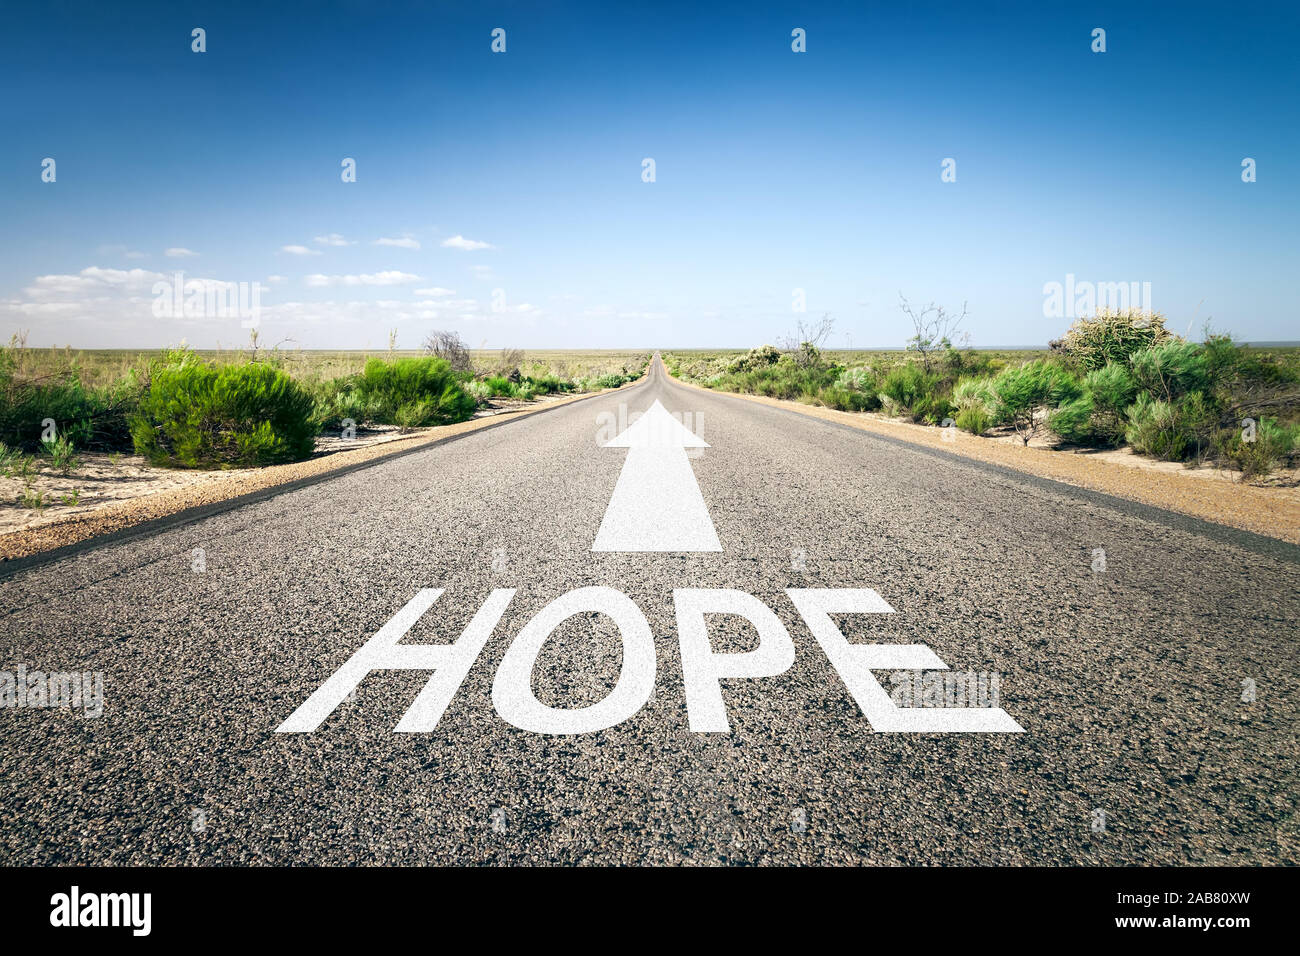 Eine unendlich lange Strasse mit der wegweisenden Aufschrift: 'Hope' Stock Photo